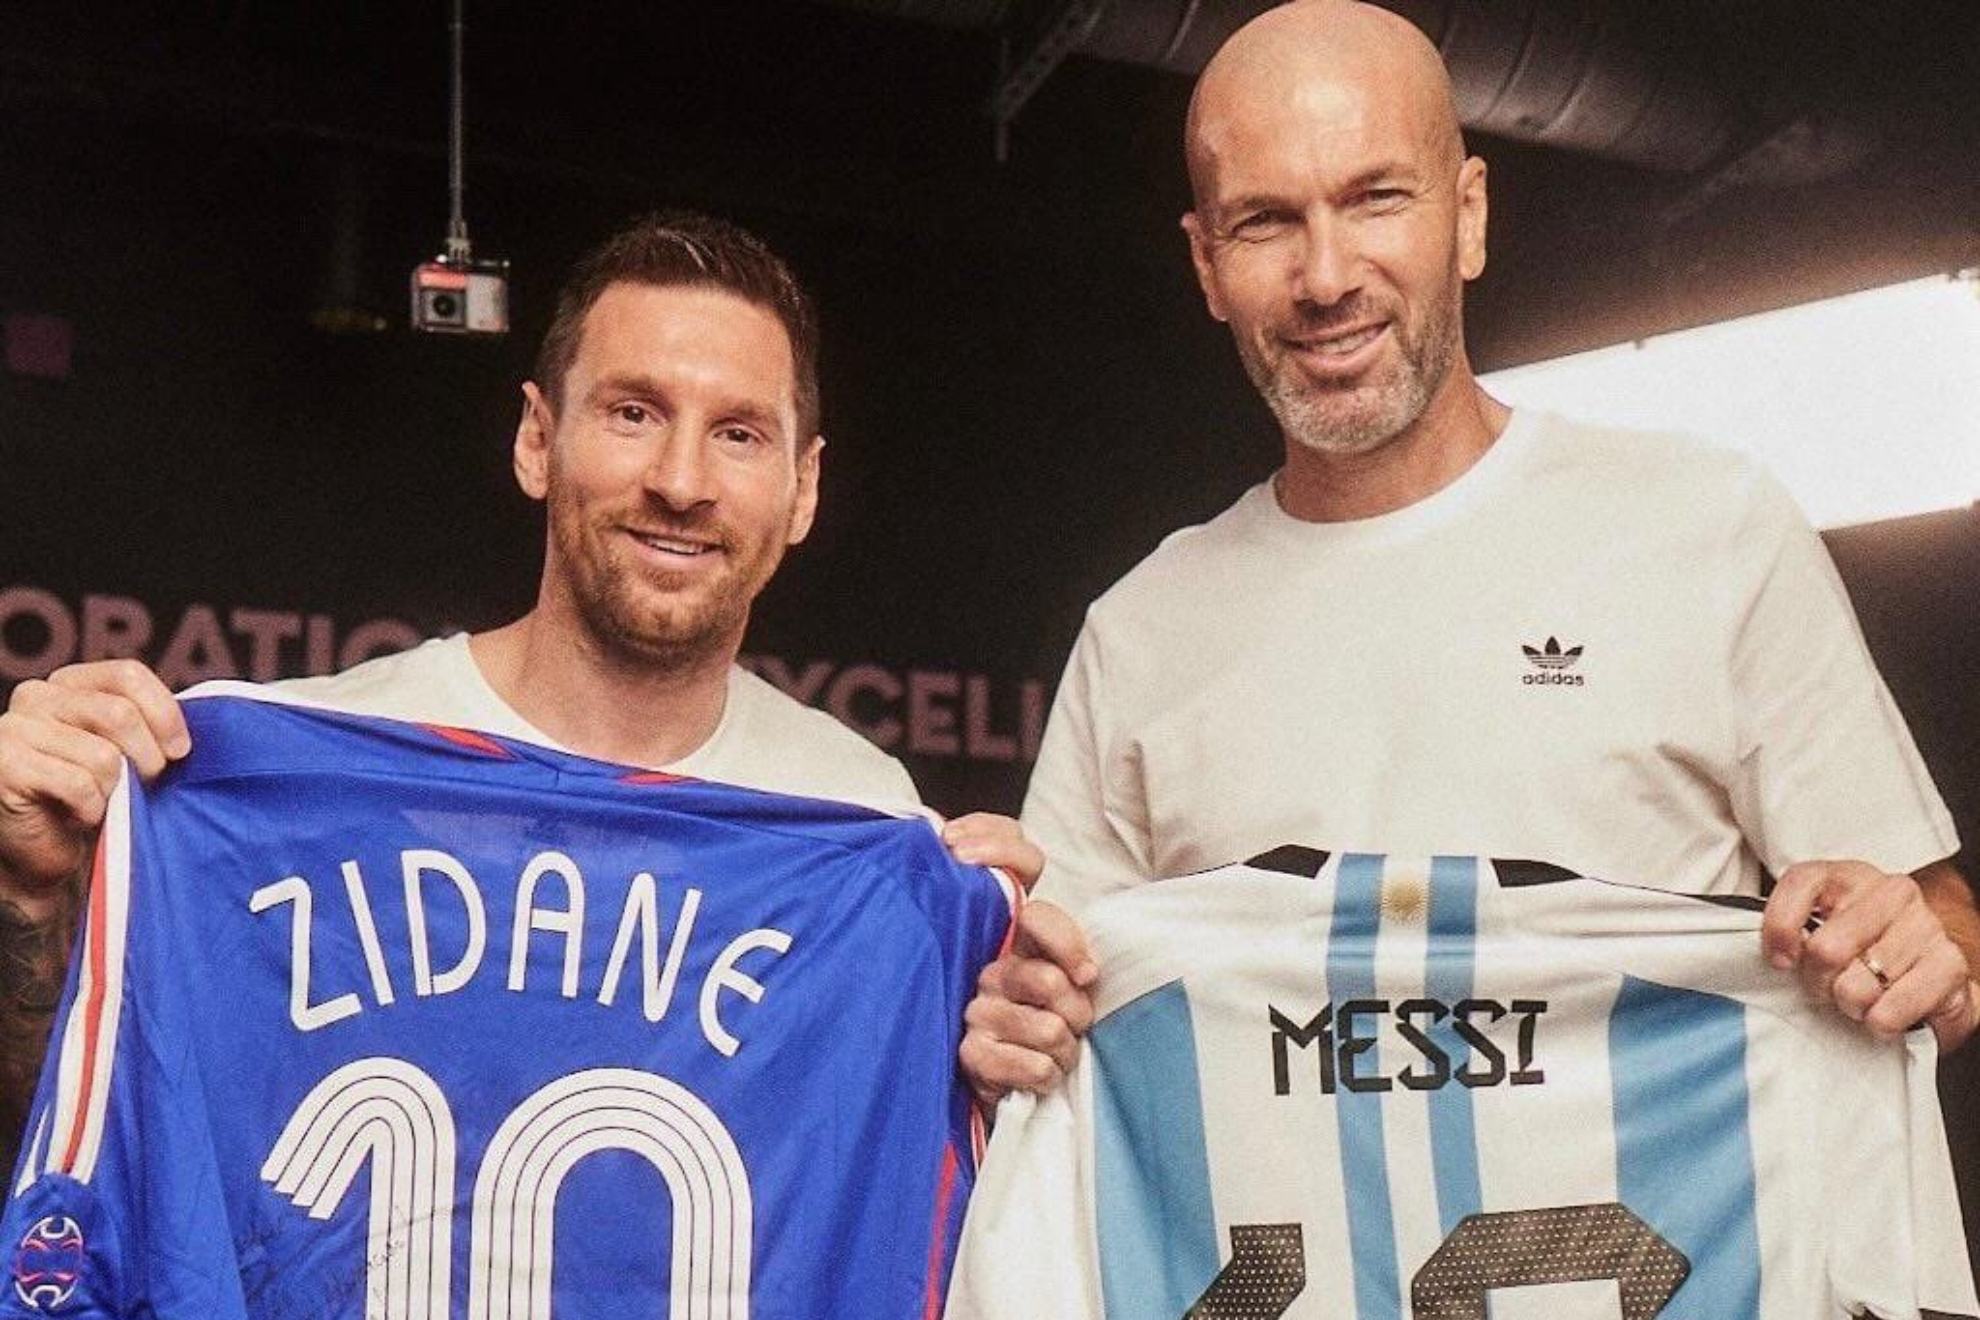 Zidane and Messi